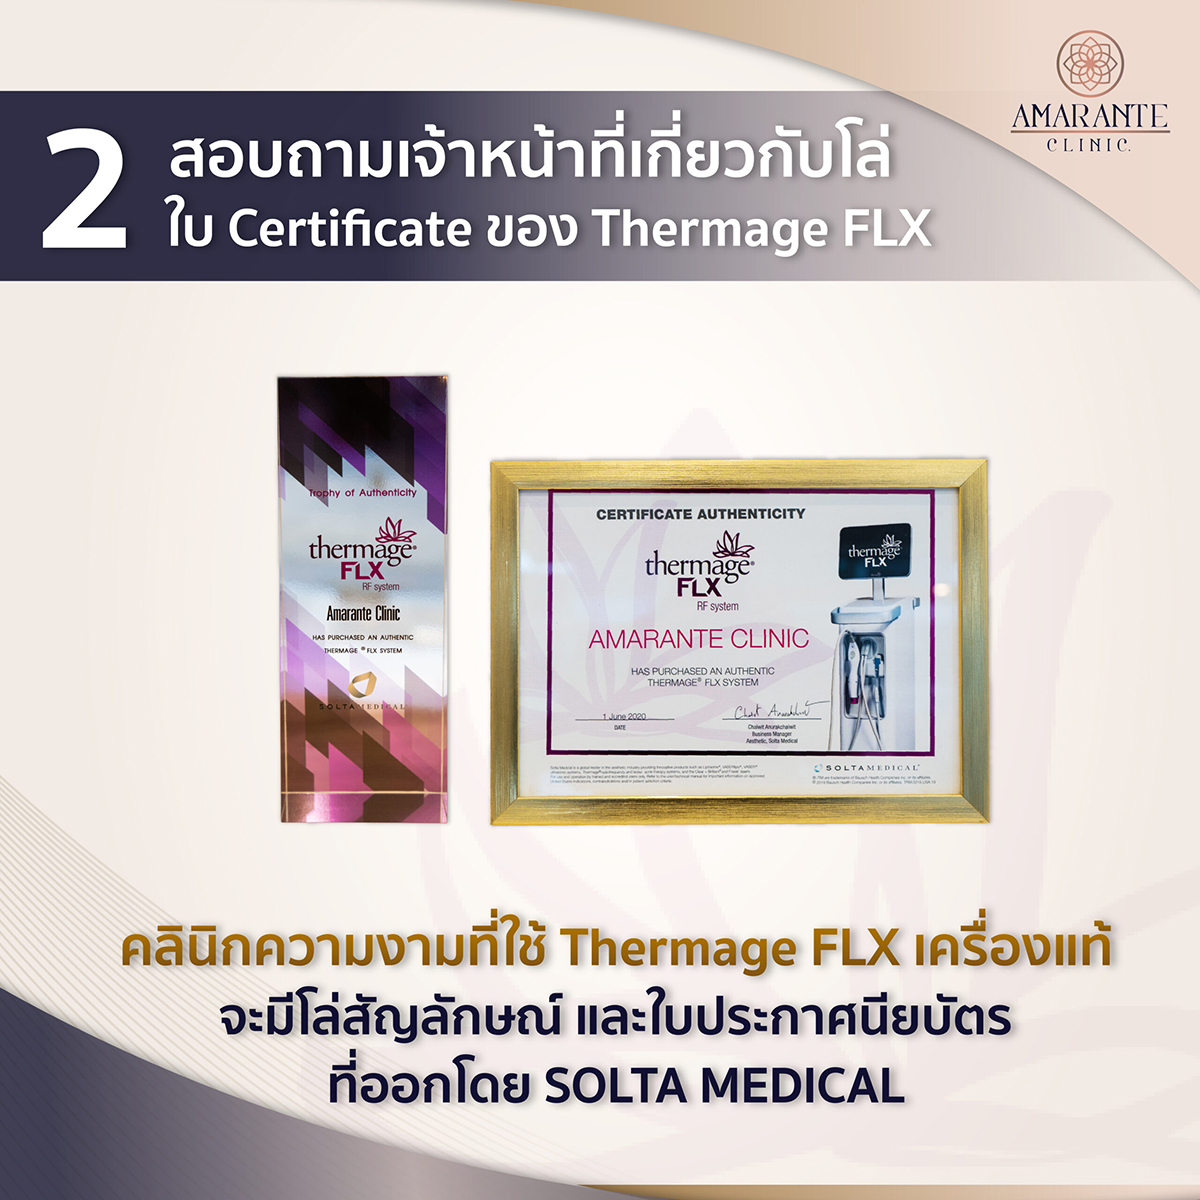 สอบถาม Certificate ของ Thermage FLX แท้